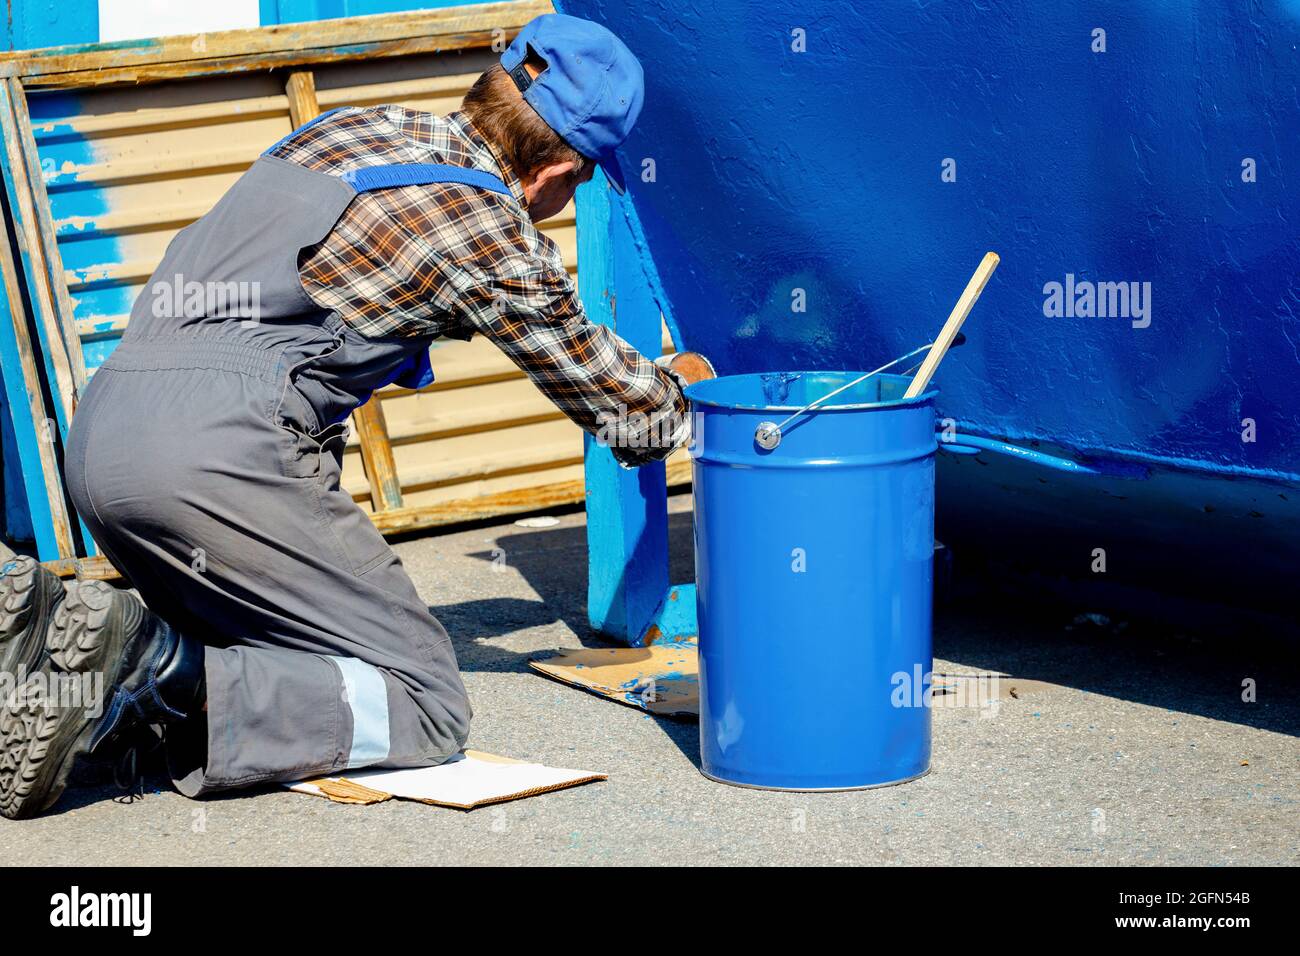 Un vieil homme dans une combinaison de travail peint une poubelle ou un conteneur dans la rue avec un pinceau. Travail à temps partiel pour un pensionné. Toil. Banque D'Images